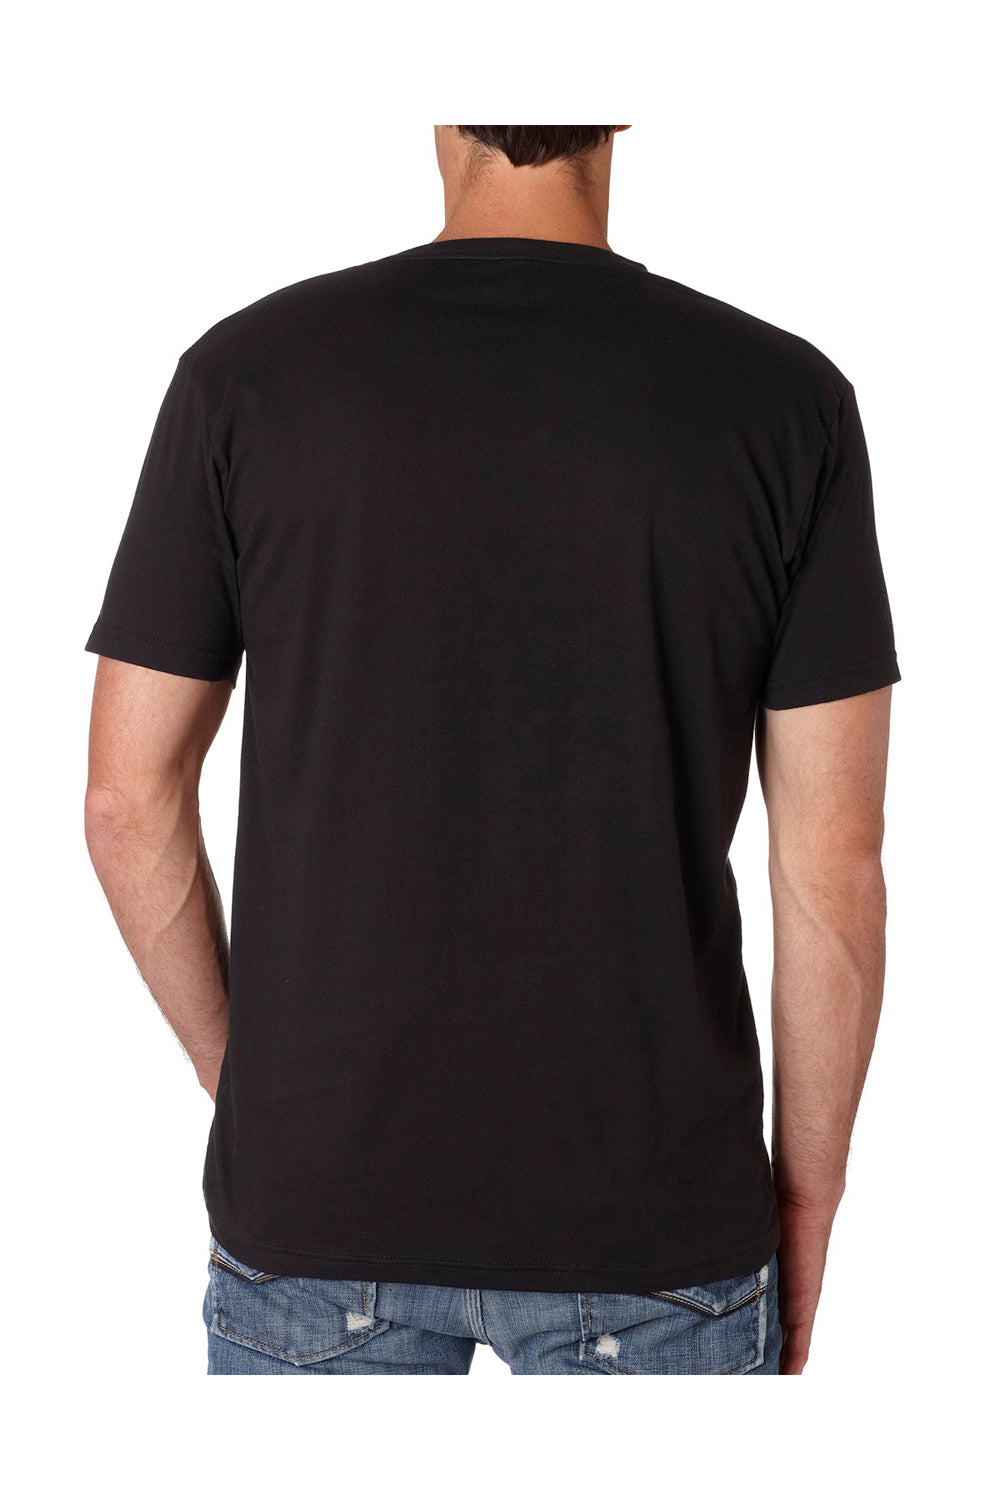 Next Level N3200 Mens Fine Jersey Short Sleeve V-Neck T-Shirt Black Back